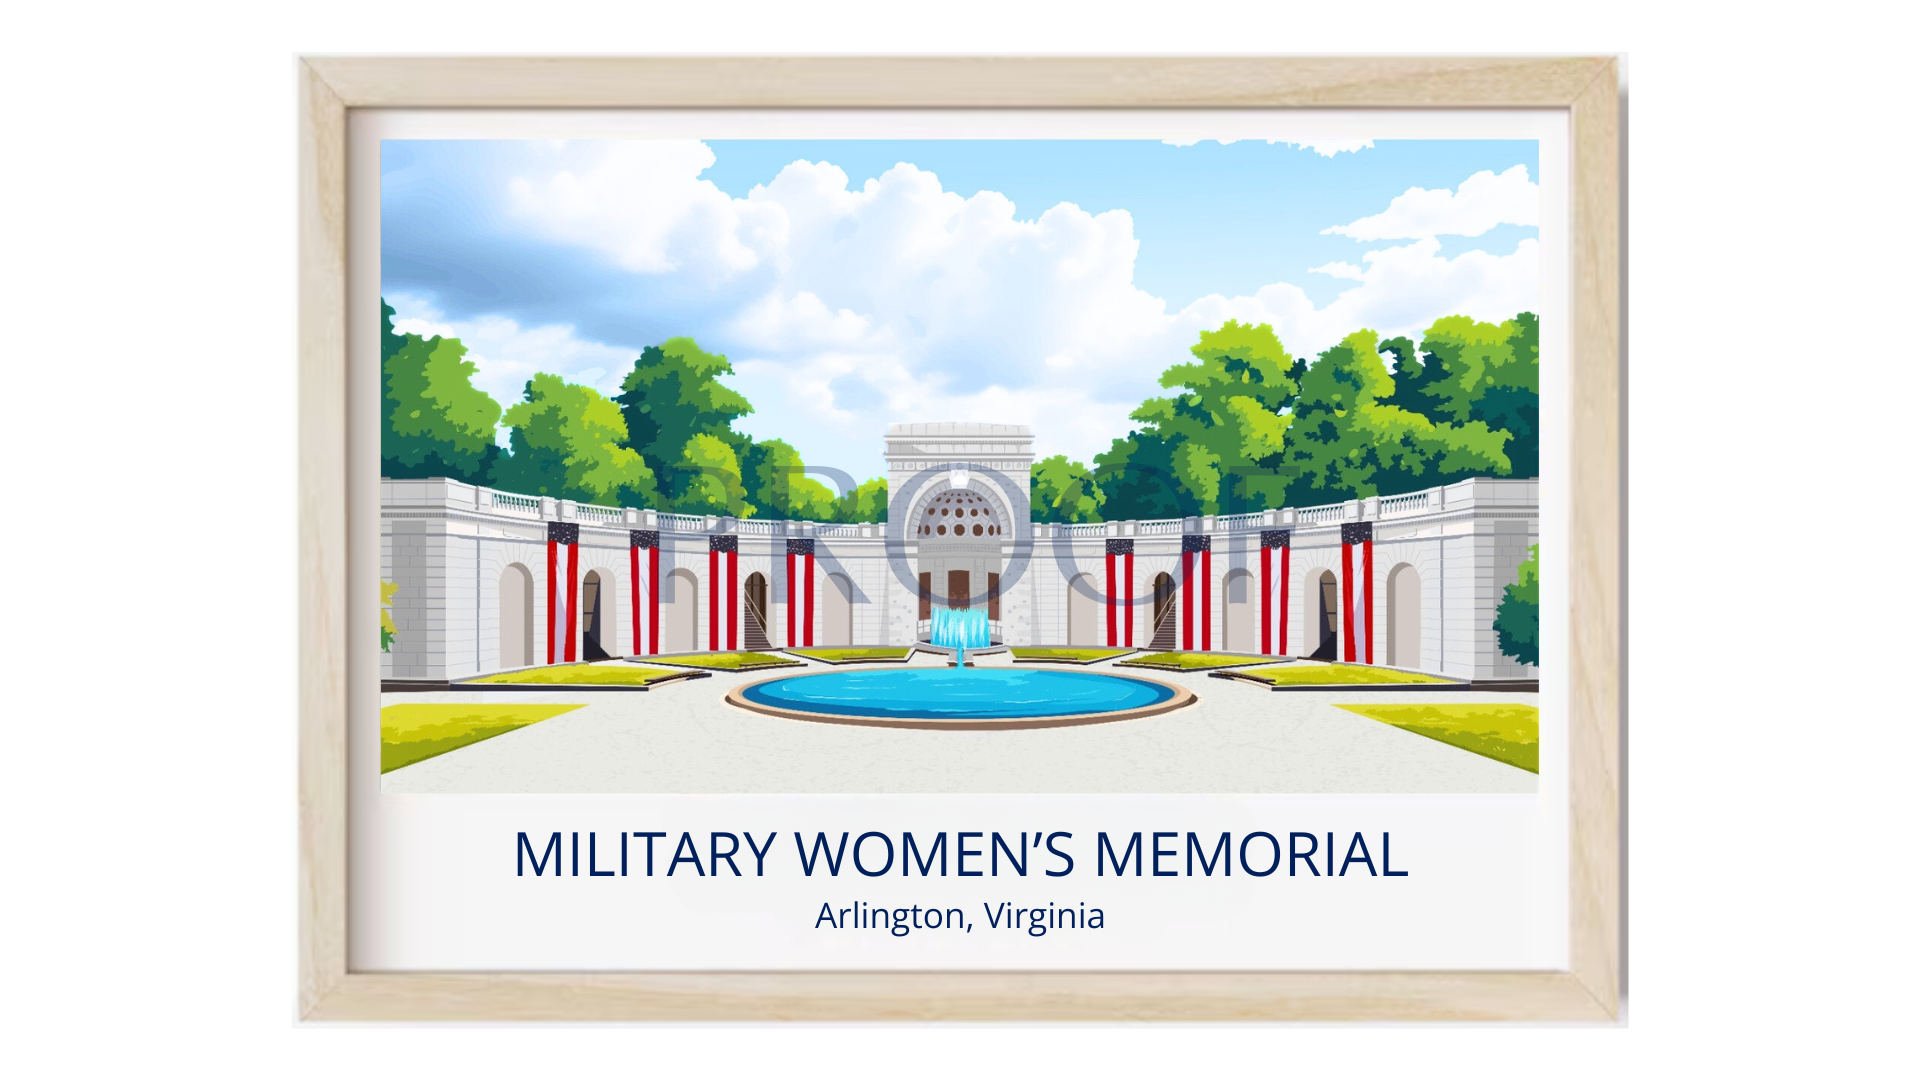 Military Women's Memorial, Arlington, VA - poster of the memorial